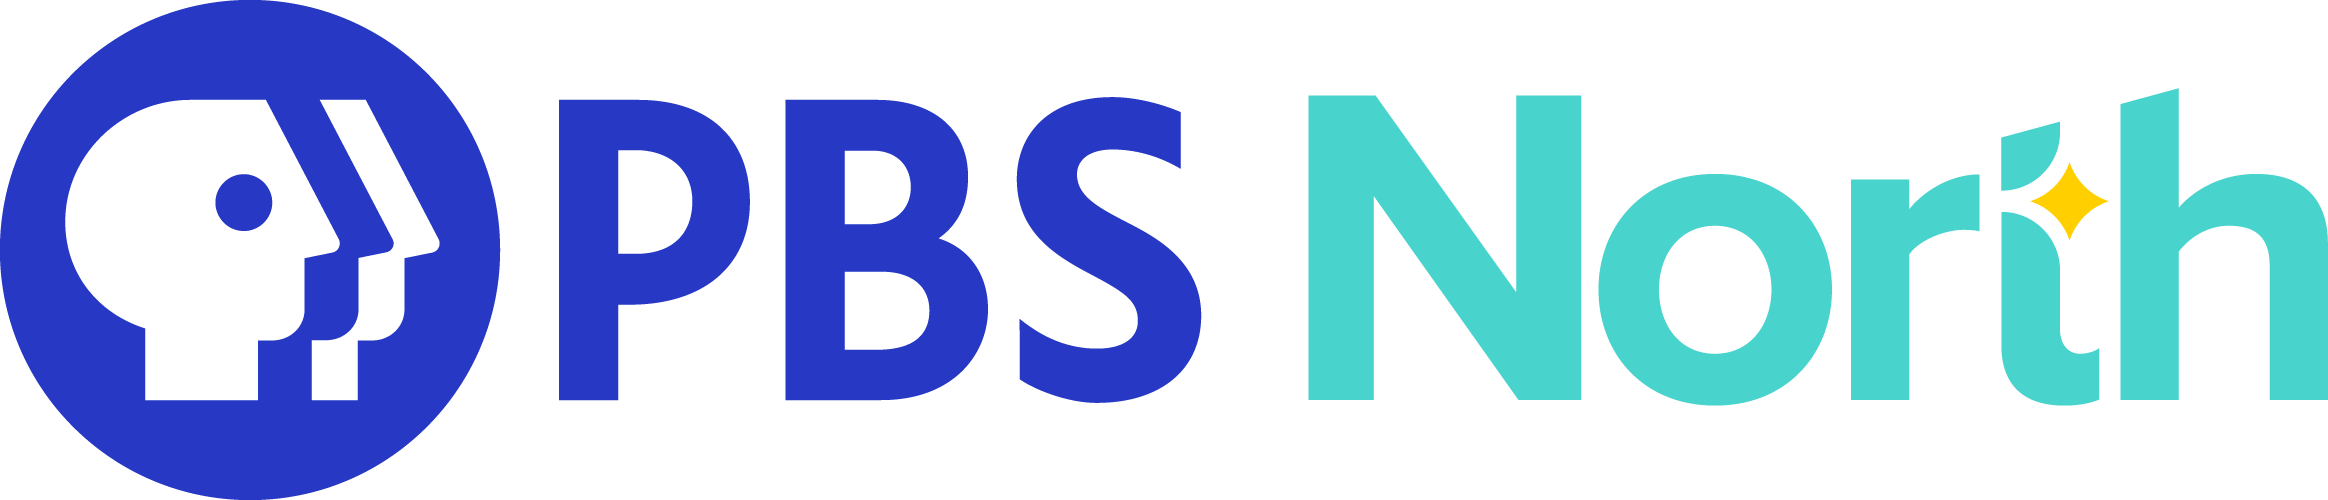 PBS North